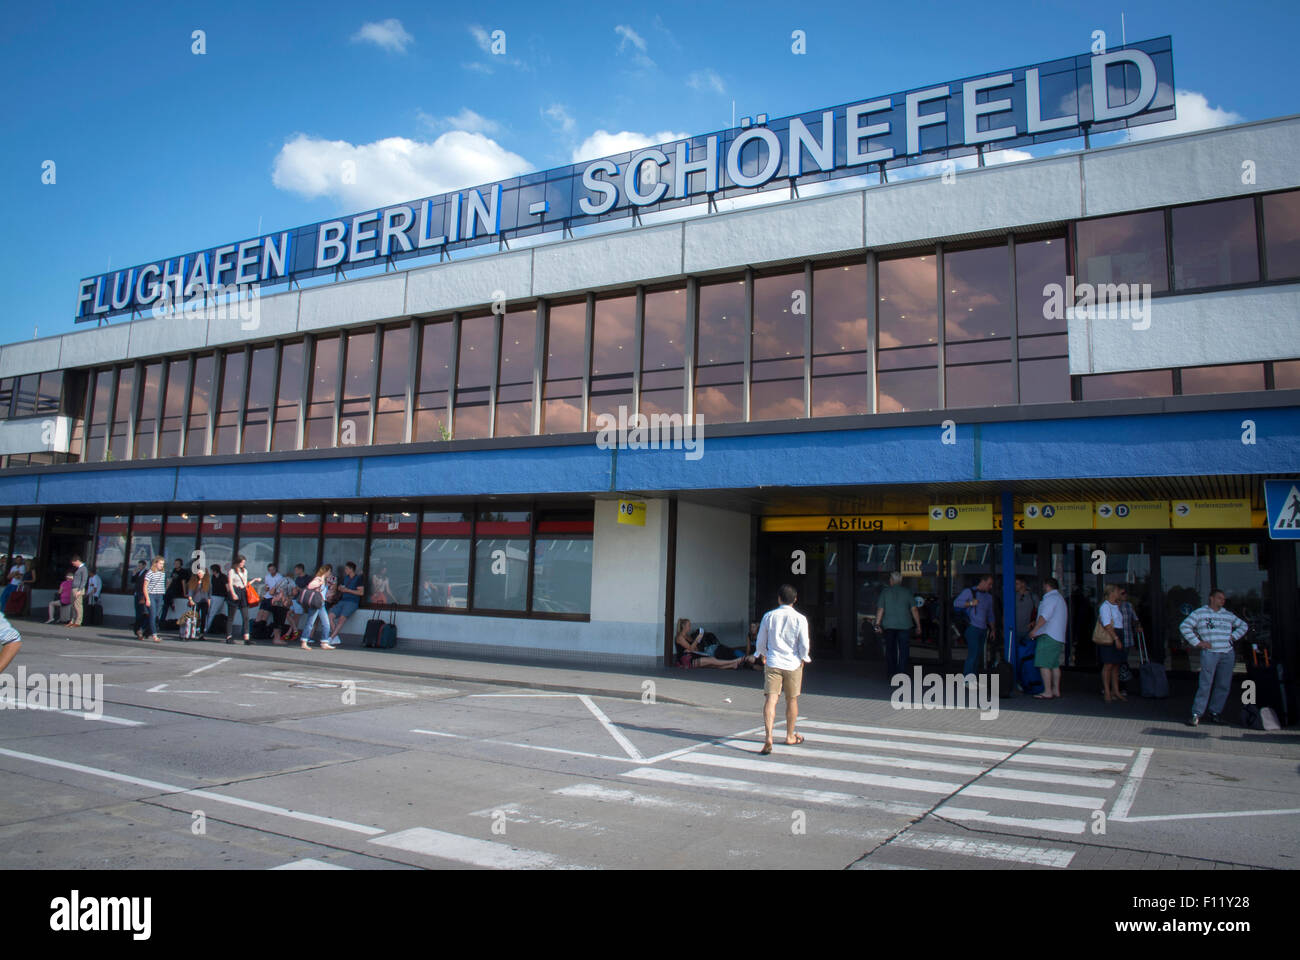 Schonefeld Airport in Berlin. Stock Photo